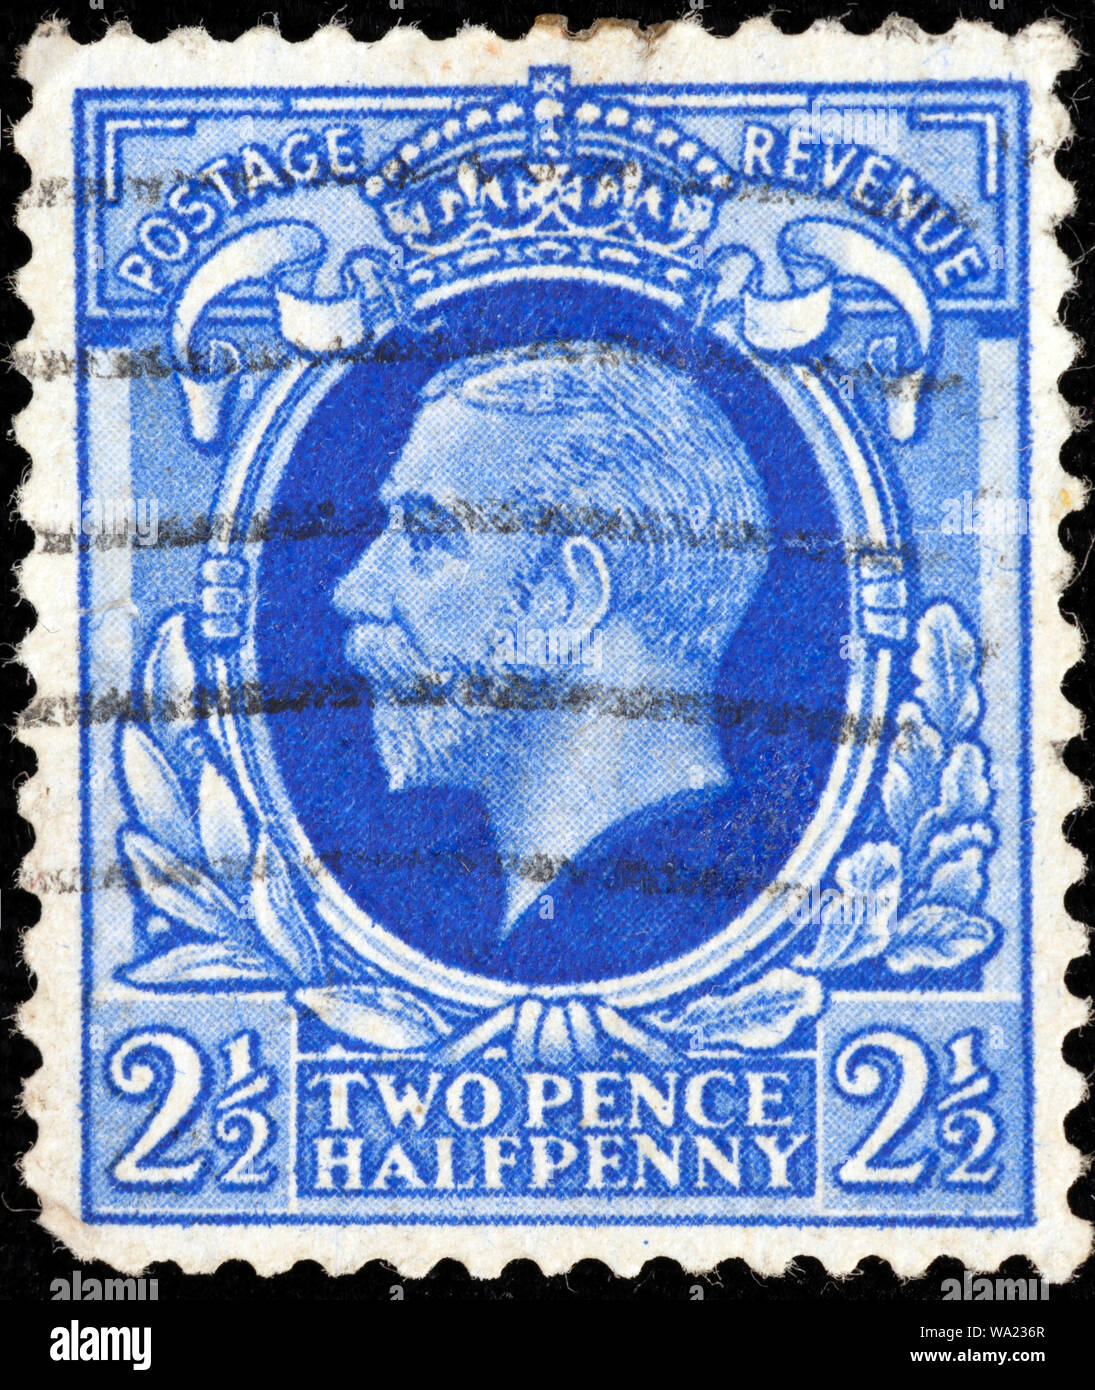 Le roi George V (1865-1936), timbre-poste, UK, 1912 Banque D'Images